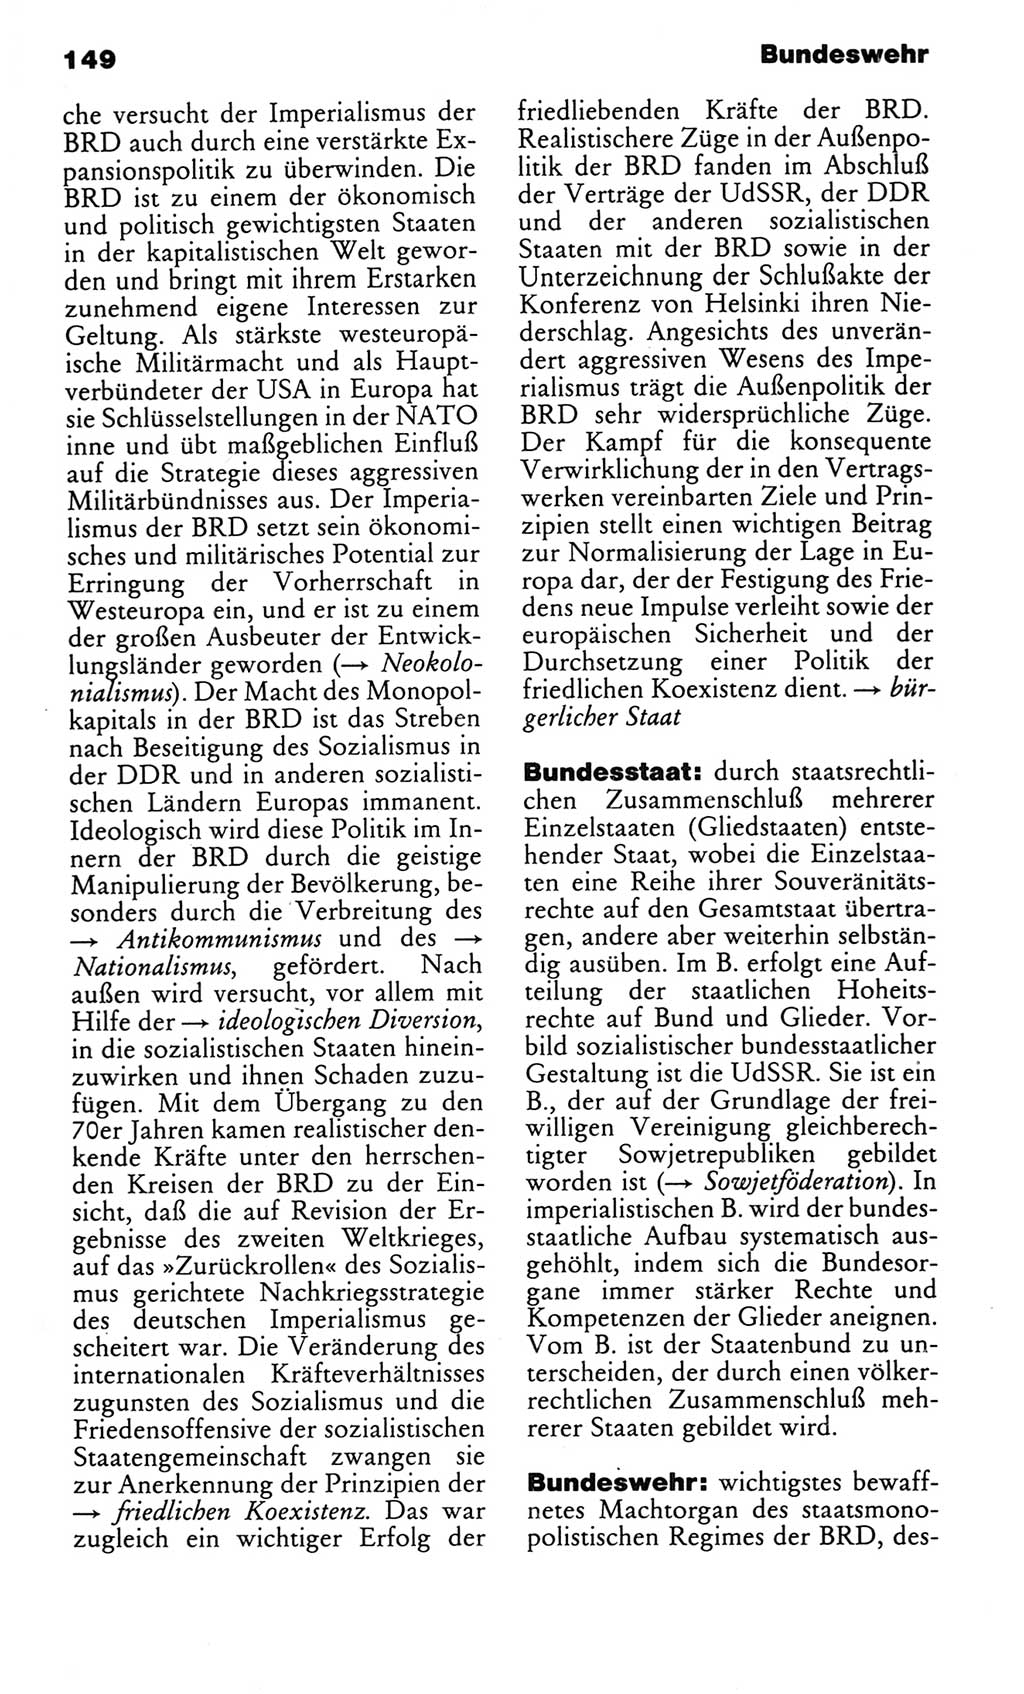 Kleines politisches Wörterbuch [Deutsche Demokratische Republik (DDR)] 1983, Seite 149 (Kl. pol. Wb. DDR 1983, S. 149)